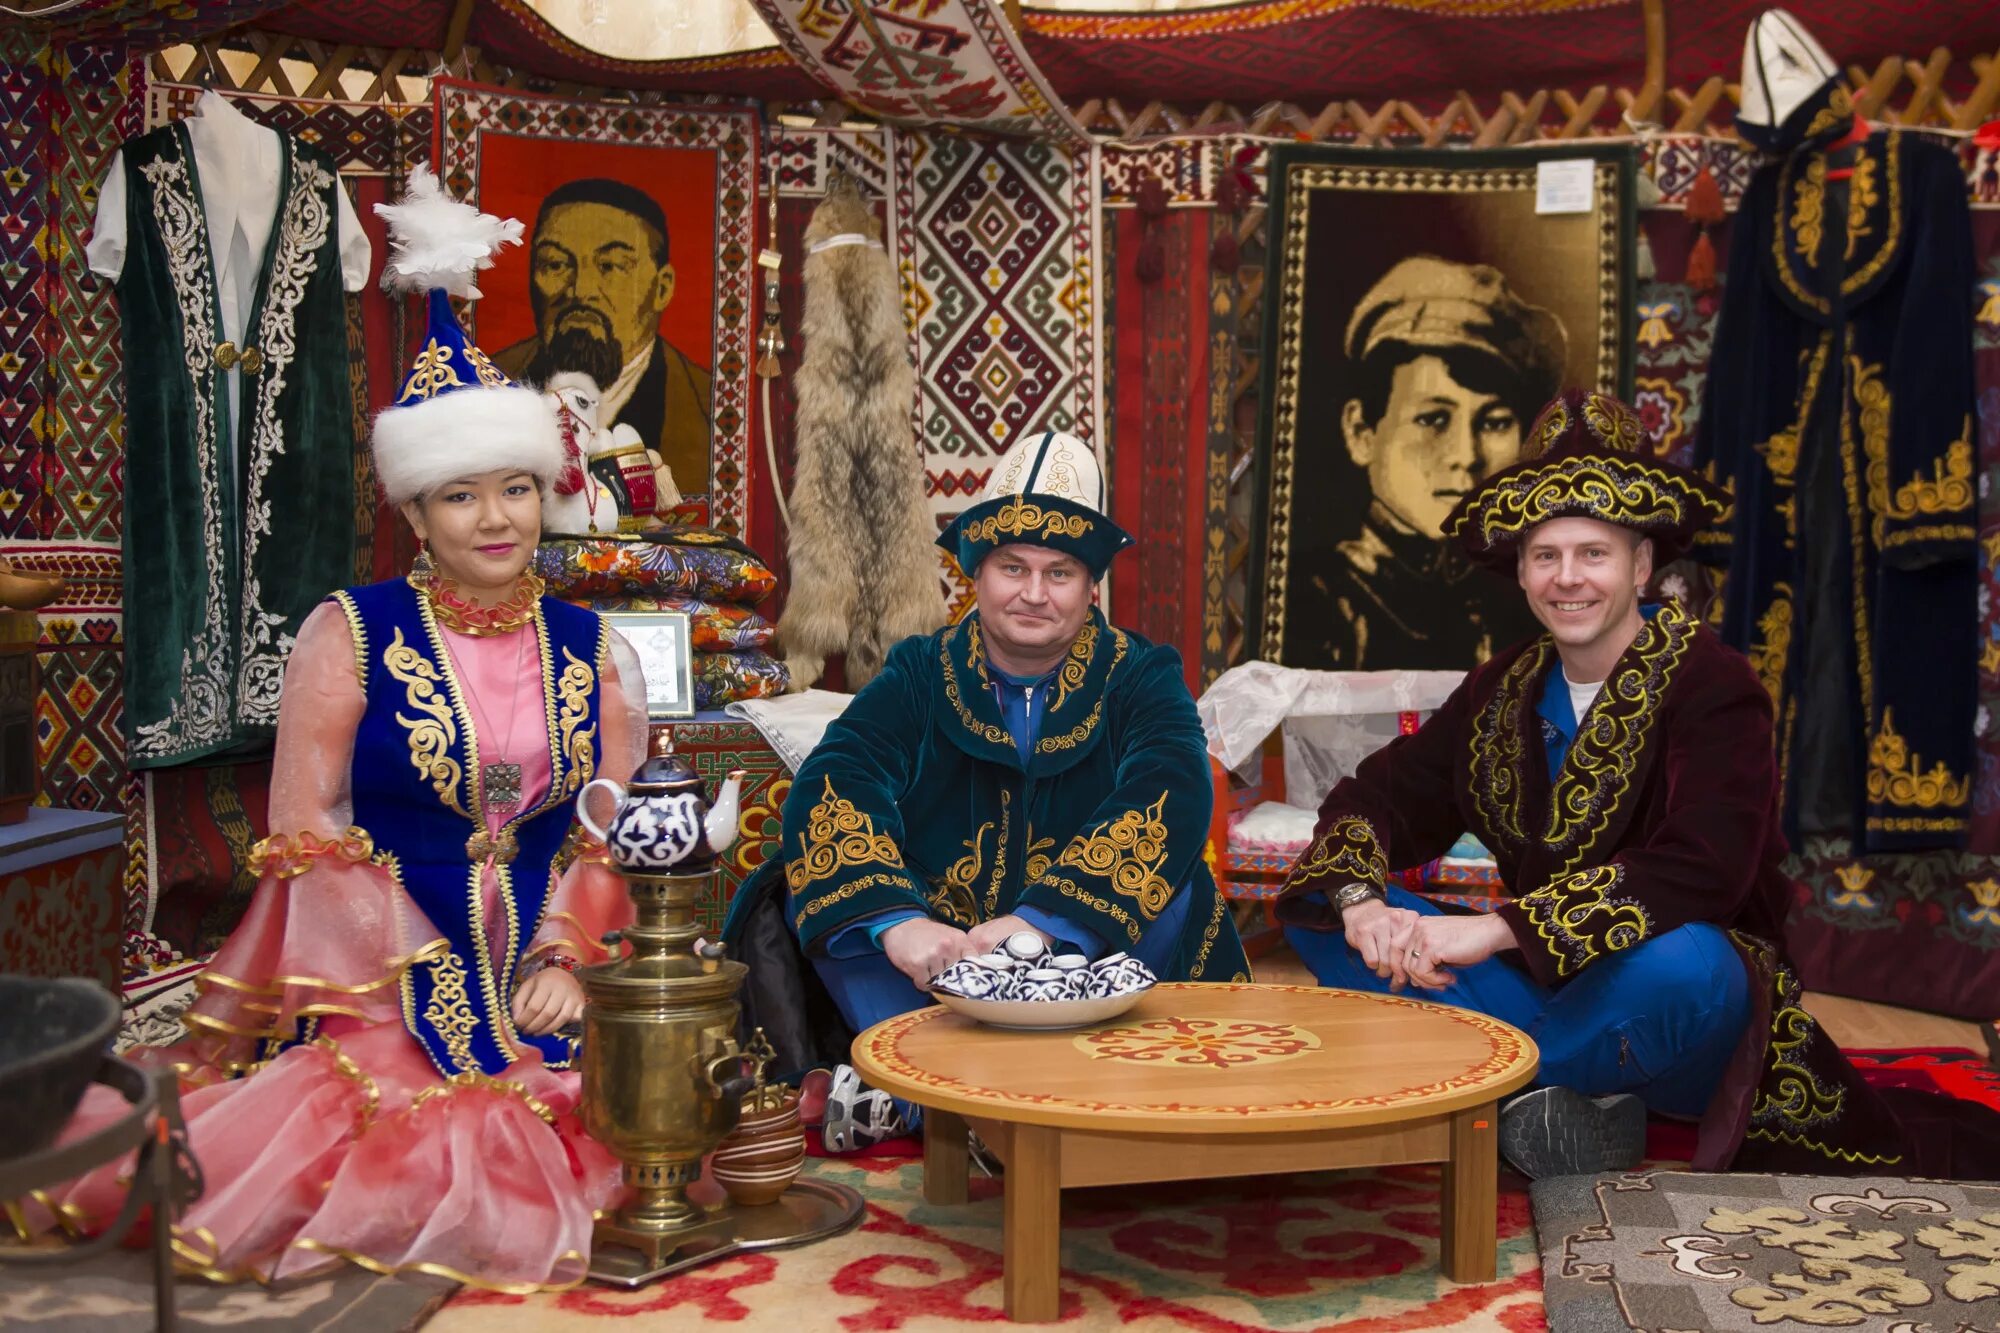 Kazakh traditional. Национальная одежда казахов. Традиционная казахская одежда. Национальные костюмы казахского народа. Казахская Национальная одежда.